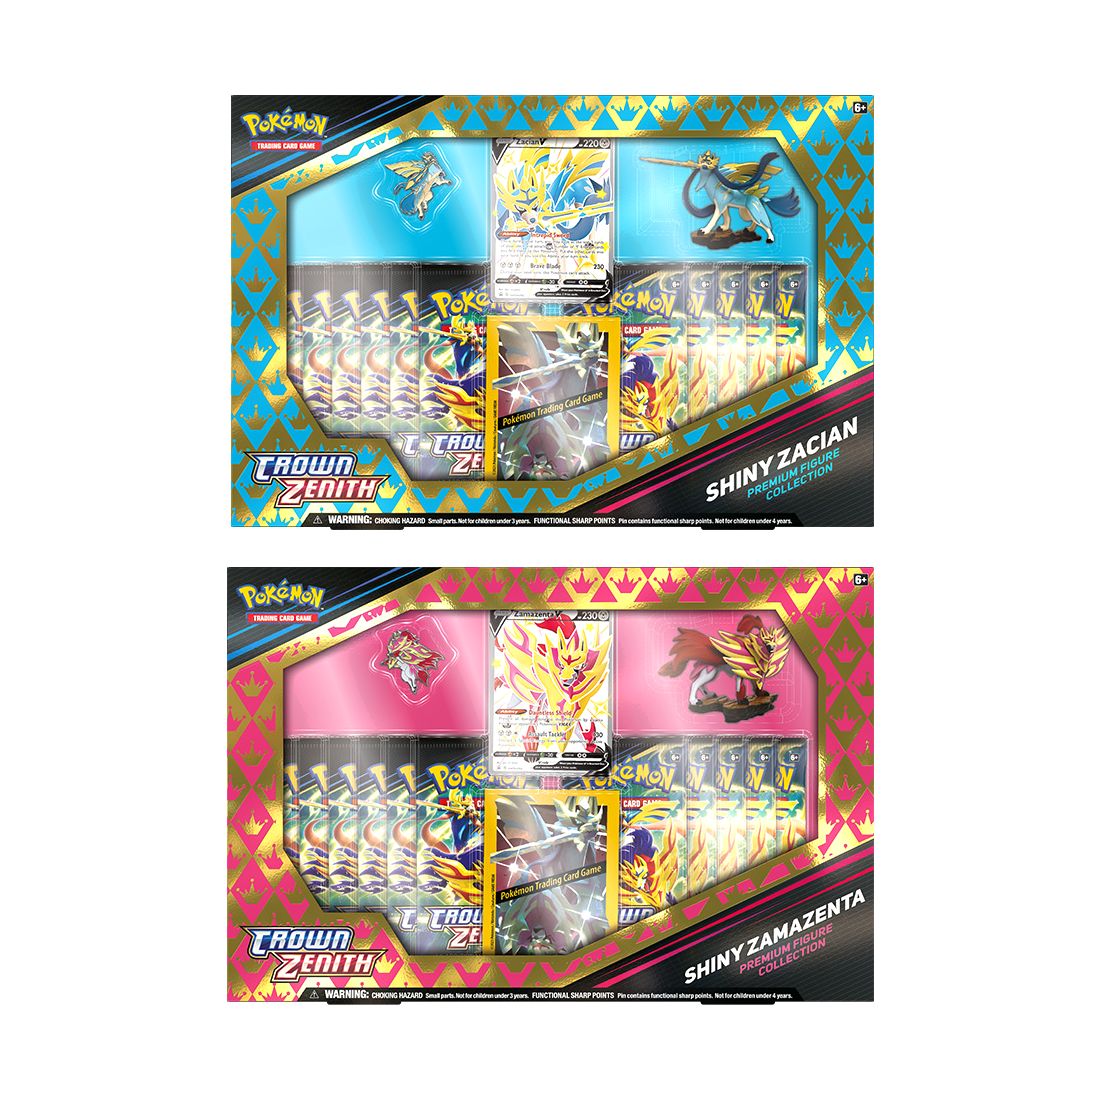 Pokémon TCG 12.5 Crown Zenith Shiny Zacian Premium Figure Collection (Assortment - Includes 1)